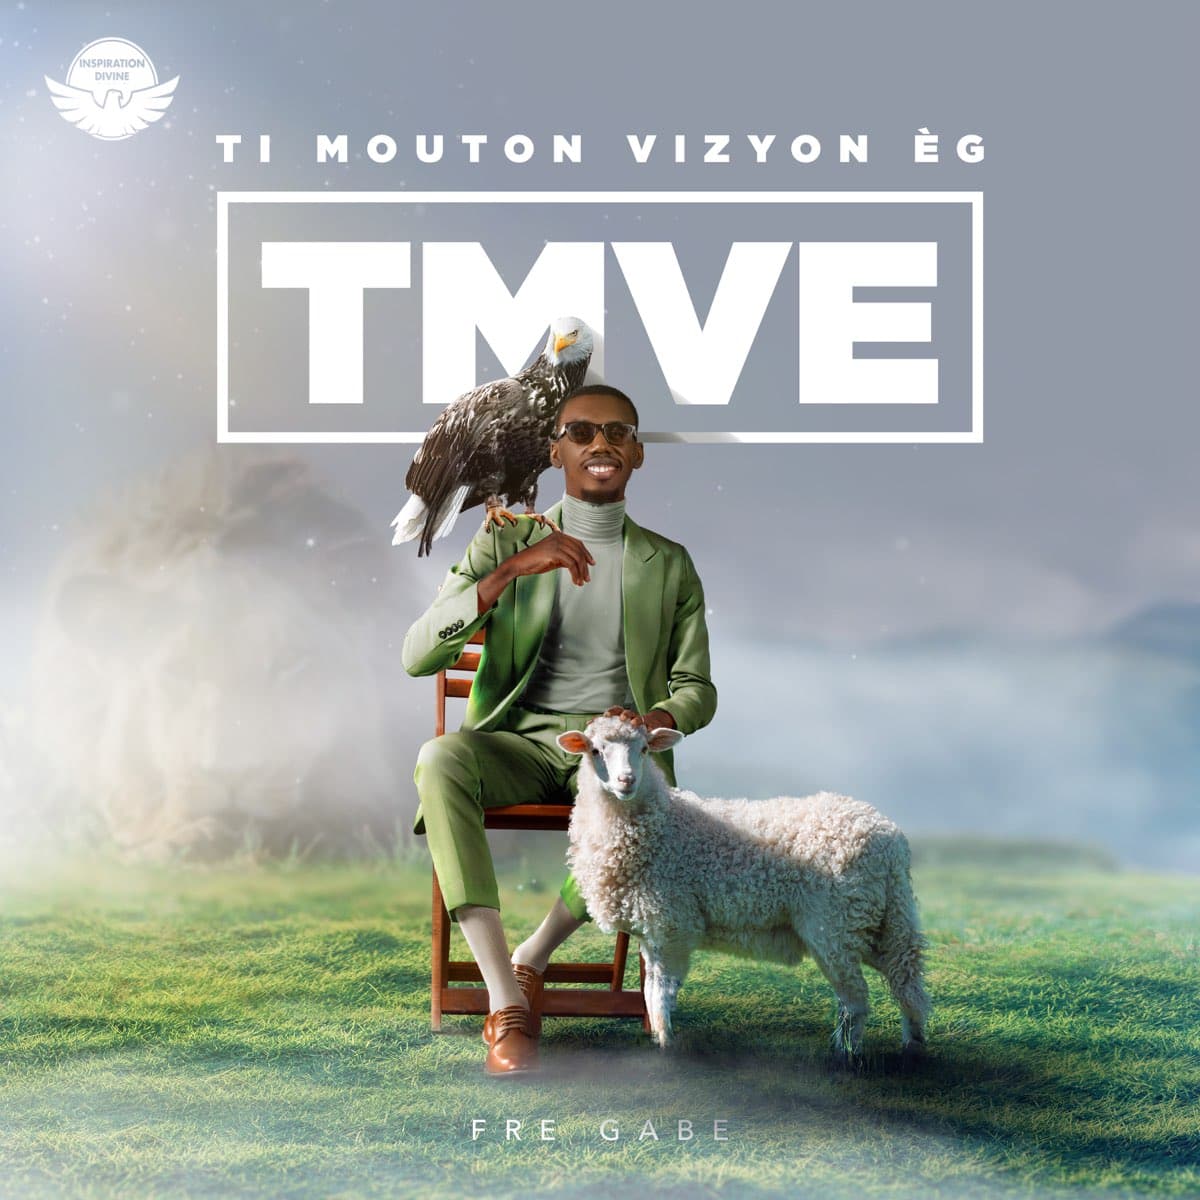 Album Fre Gabe Ti mouton vizyon èg TMVE Download Full Album